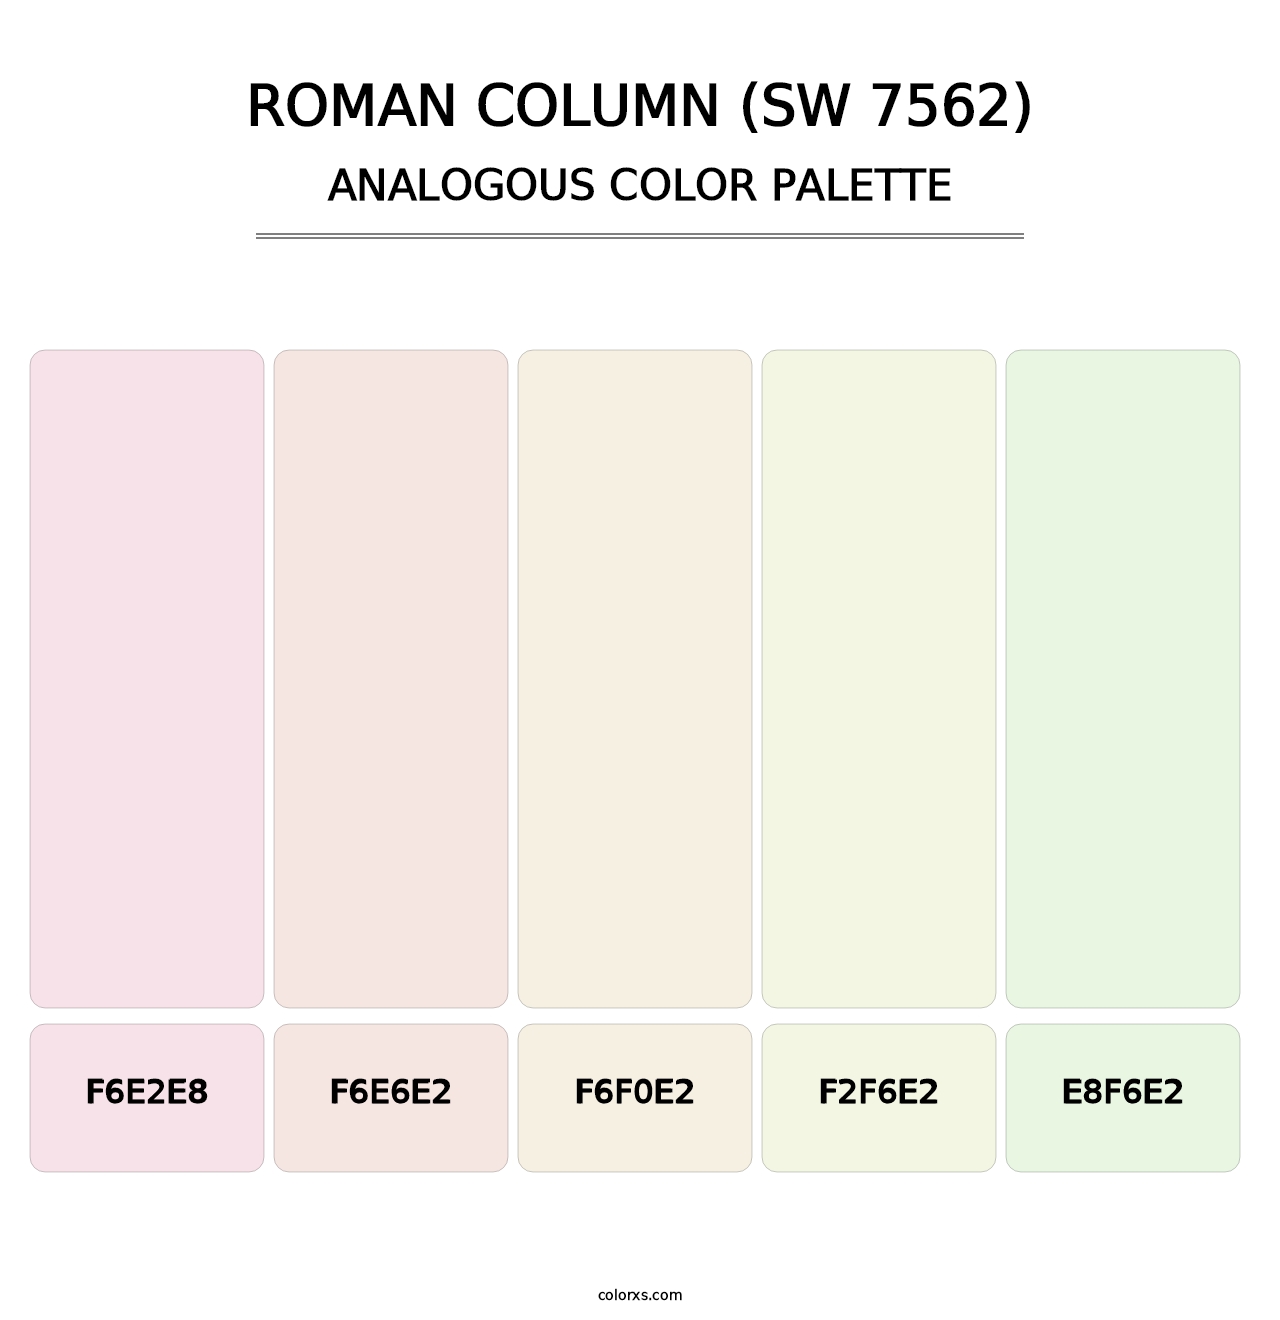 Roman Column (SW 7562) - Analogous Color Palette